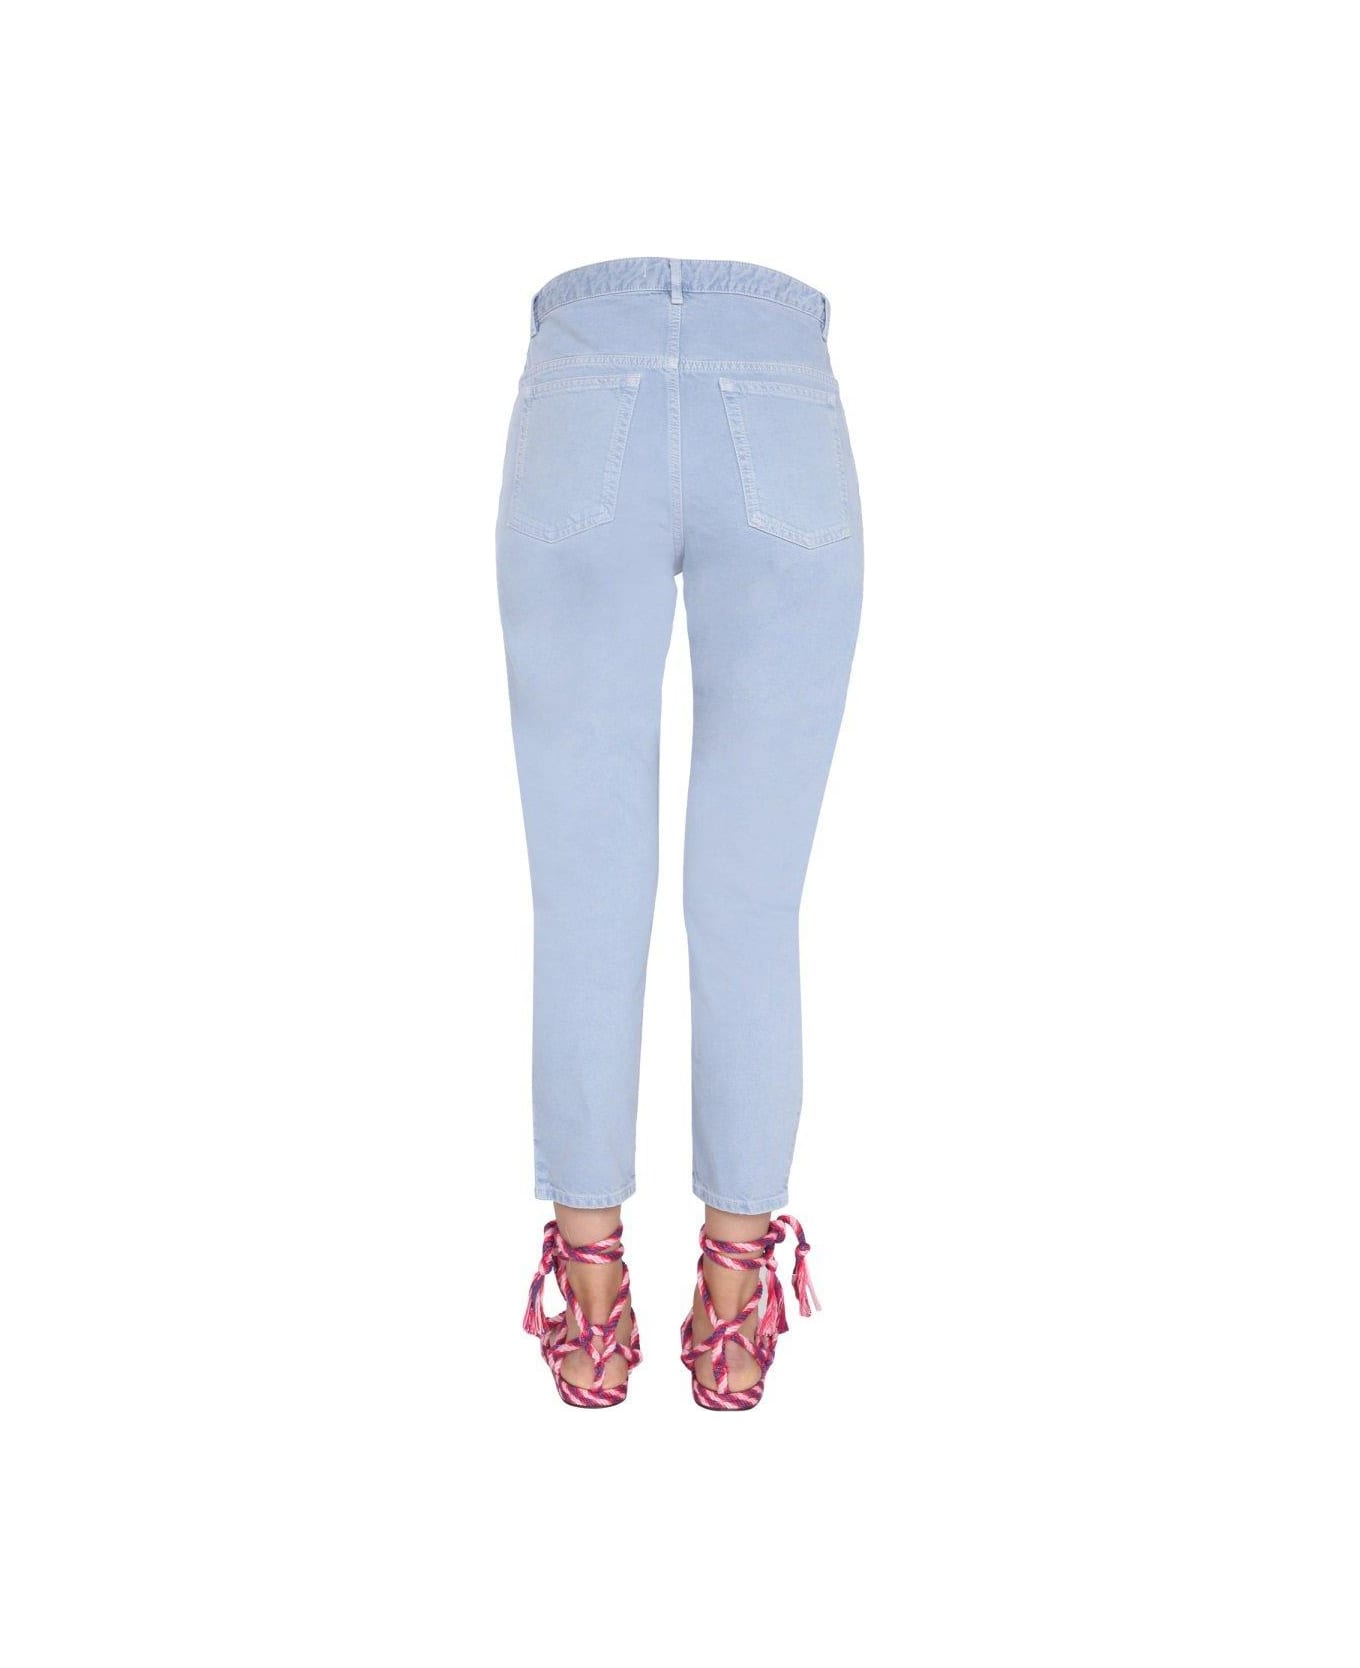 Marant Étoile Lanea High-waisted Jeans - BABY BLUE